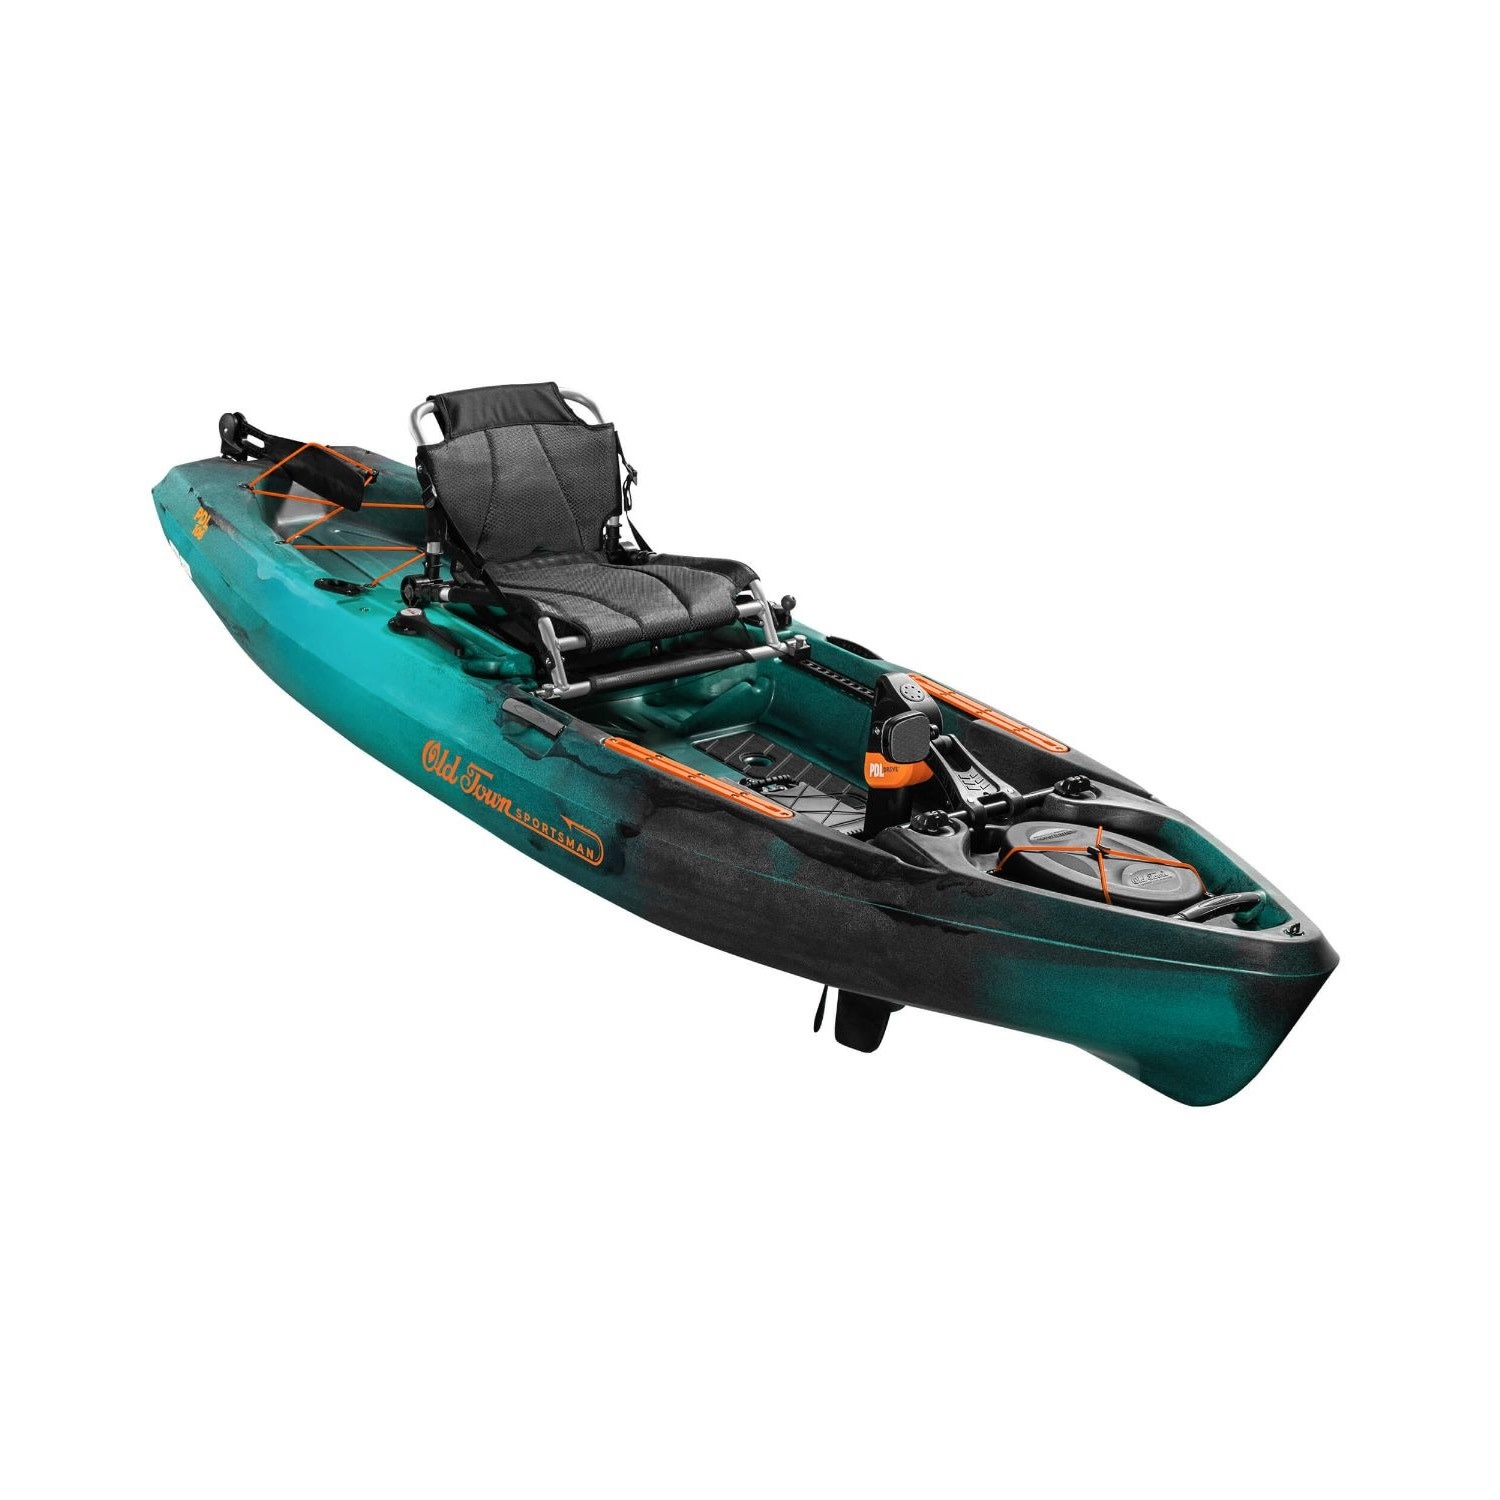 Sportsman PDL 106 fishing kayak - Coast Outdoors